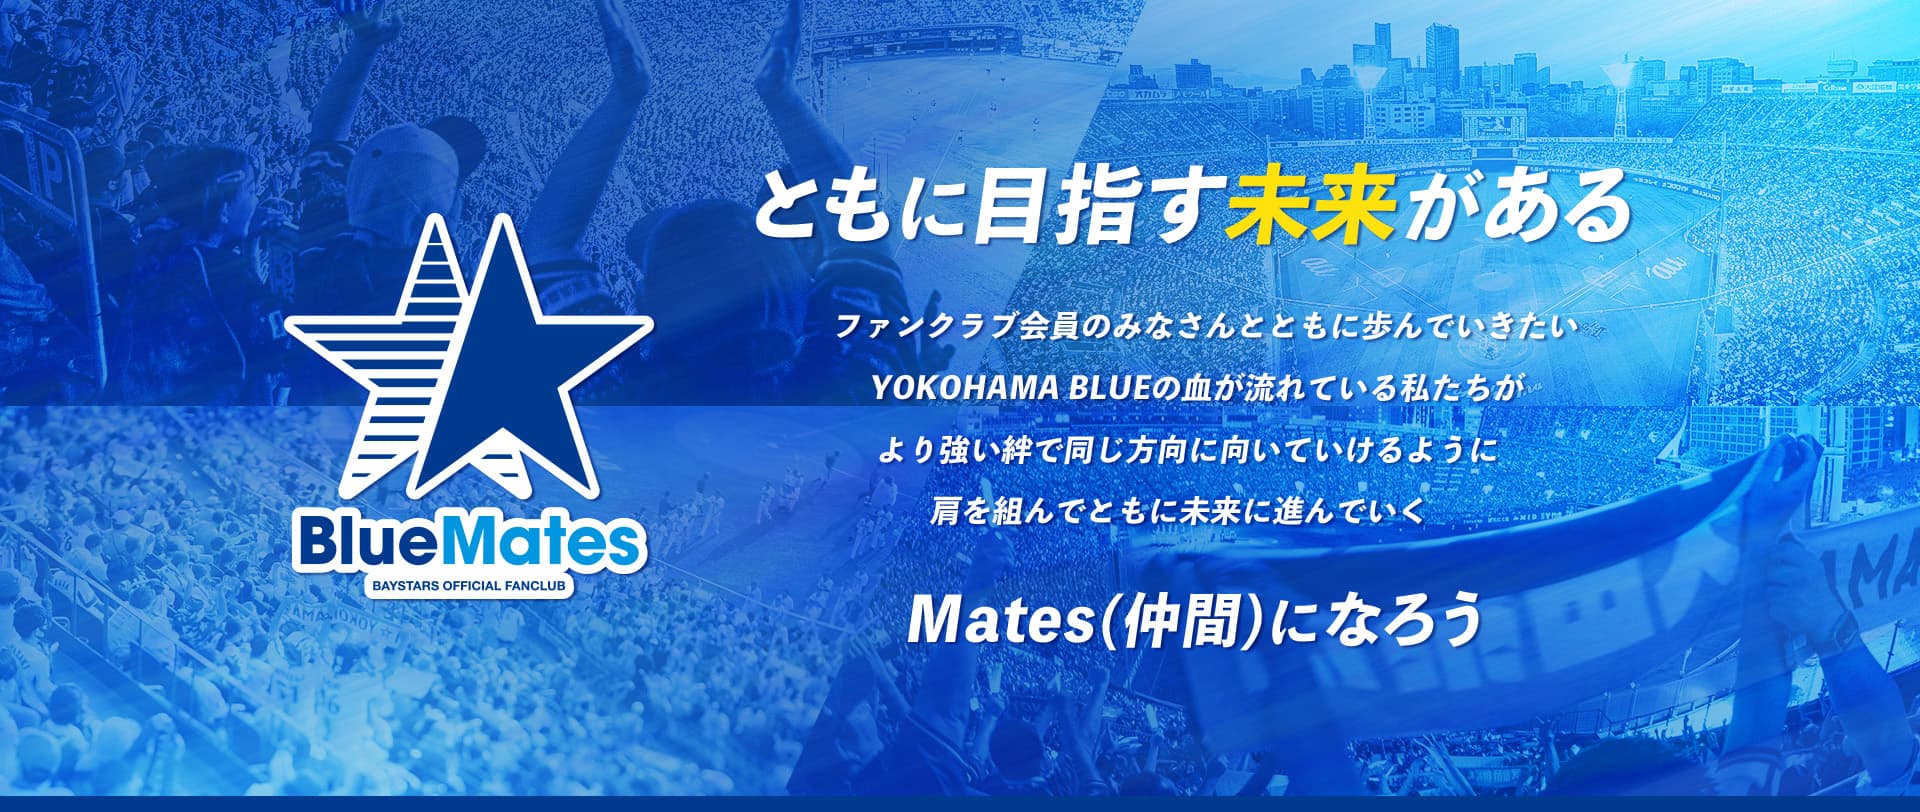 ファンクラブ「BlueMates」 ｜ 横浜DeNAベイスターズ